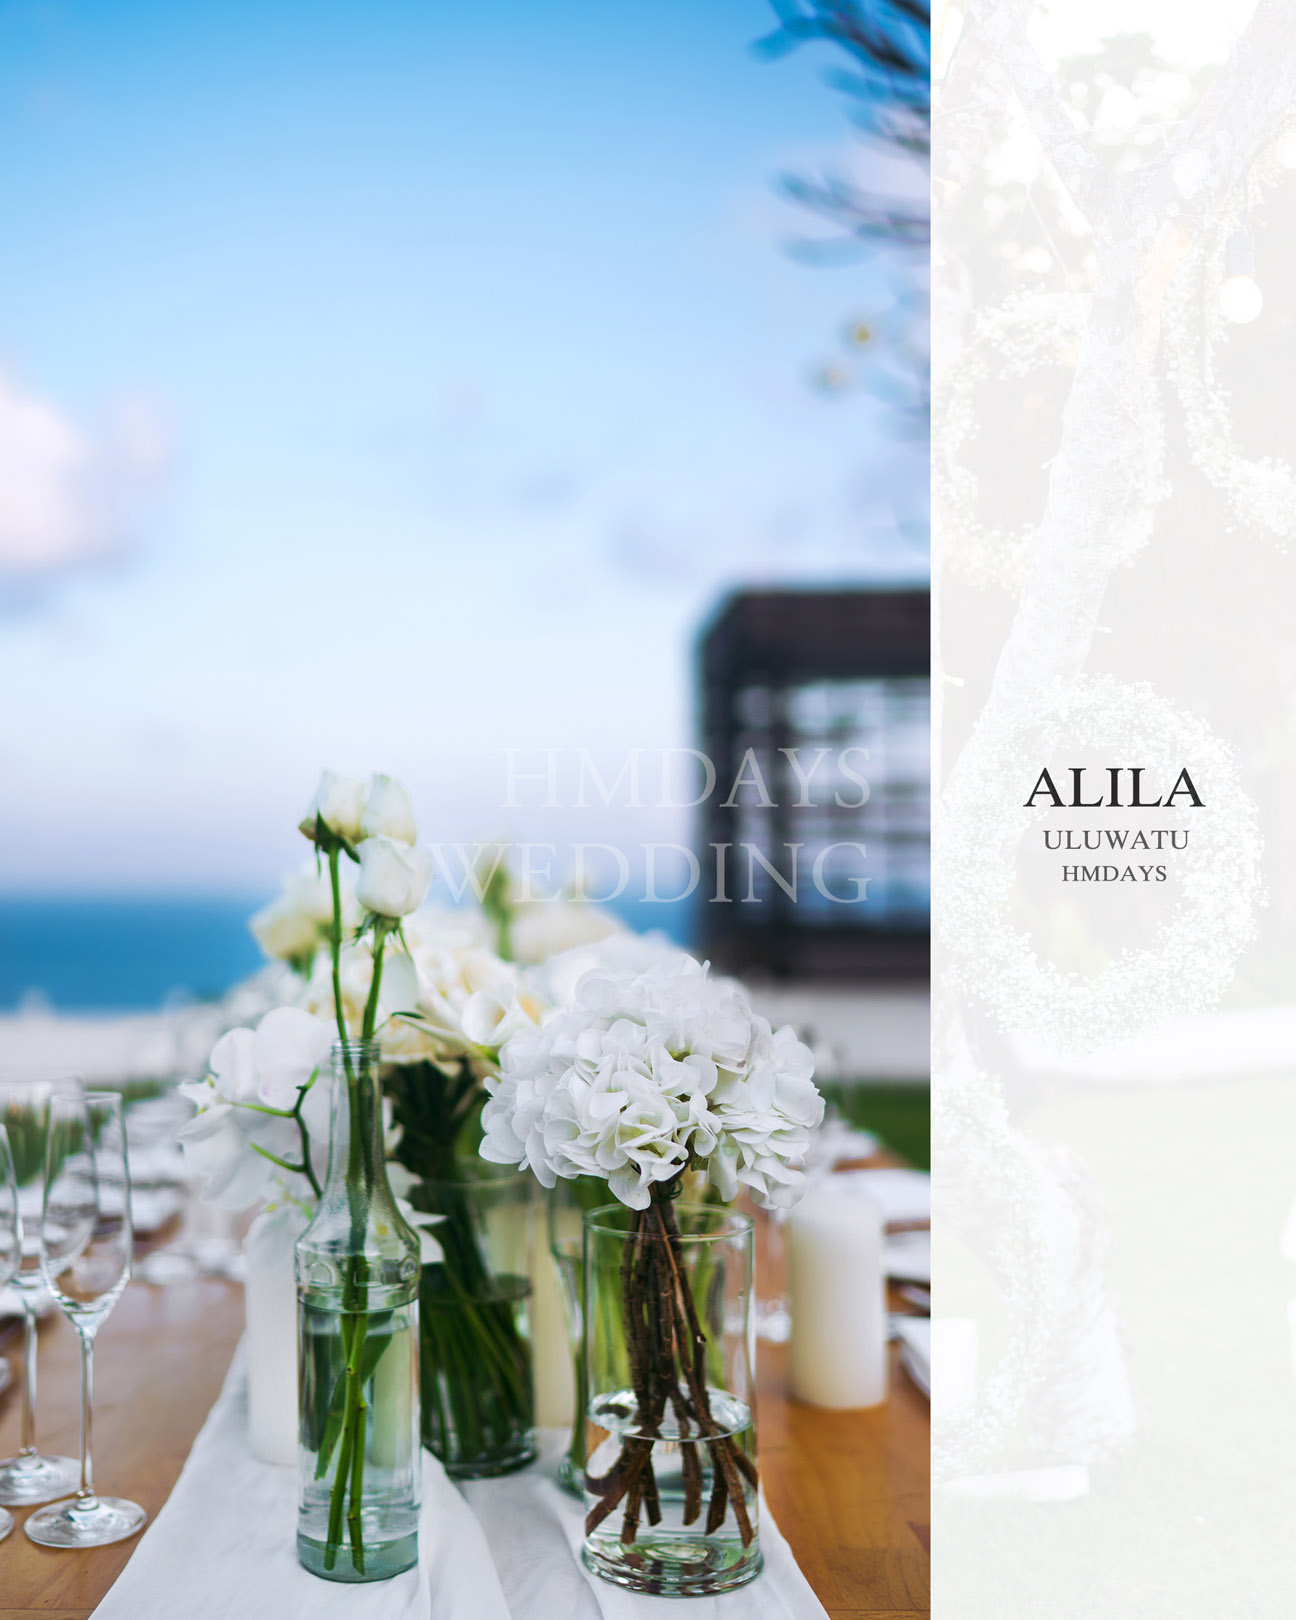 巴厘岛阿丽拉婚礼晚宴ALILA婚礼晚宴布置|海外婚礼晚宴|海外婚礼定制中高端布置案例|巴厘岛婚礼布置定制案例